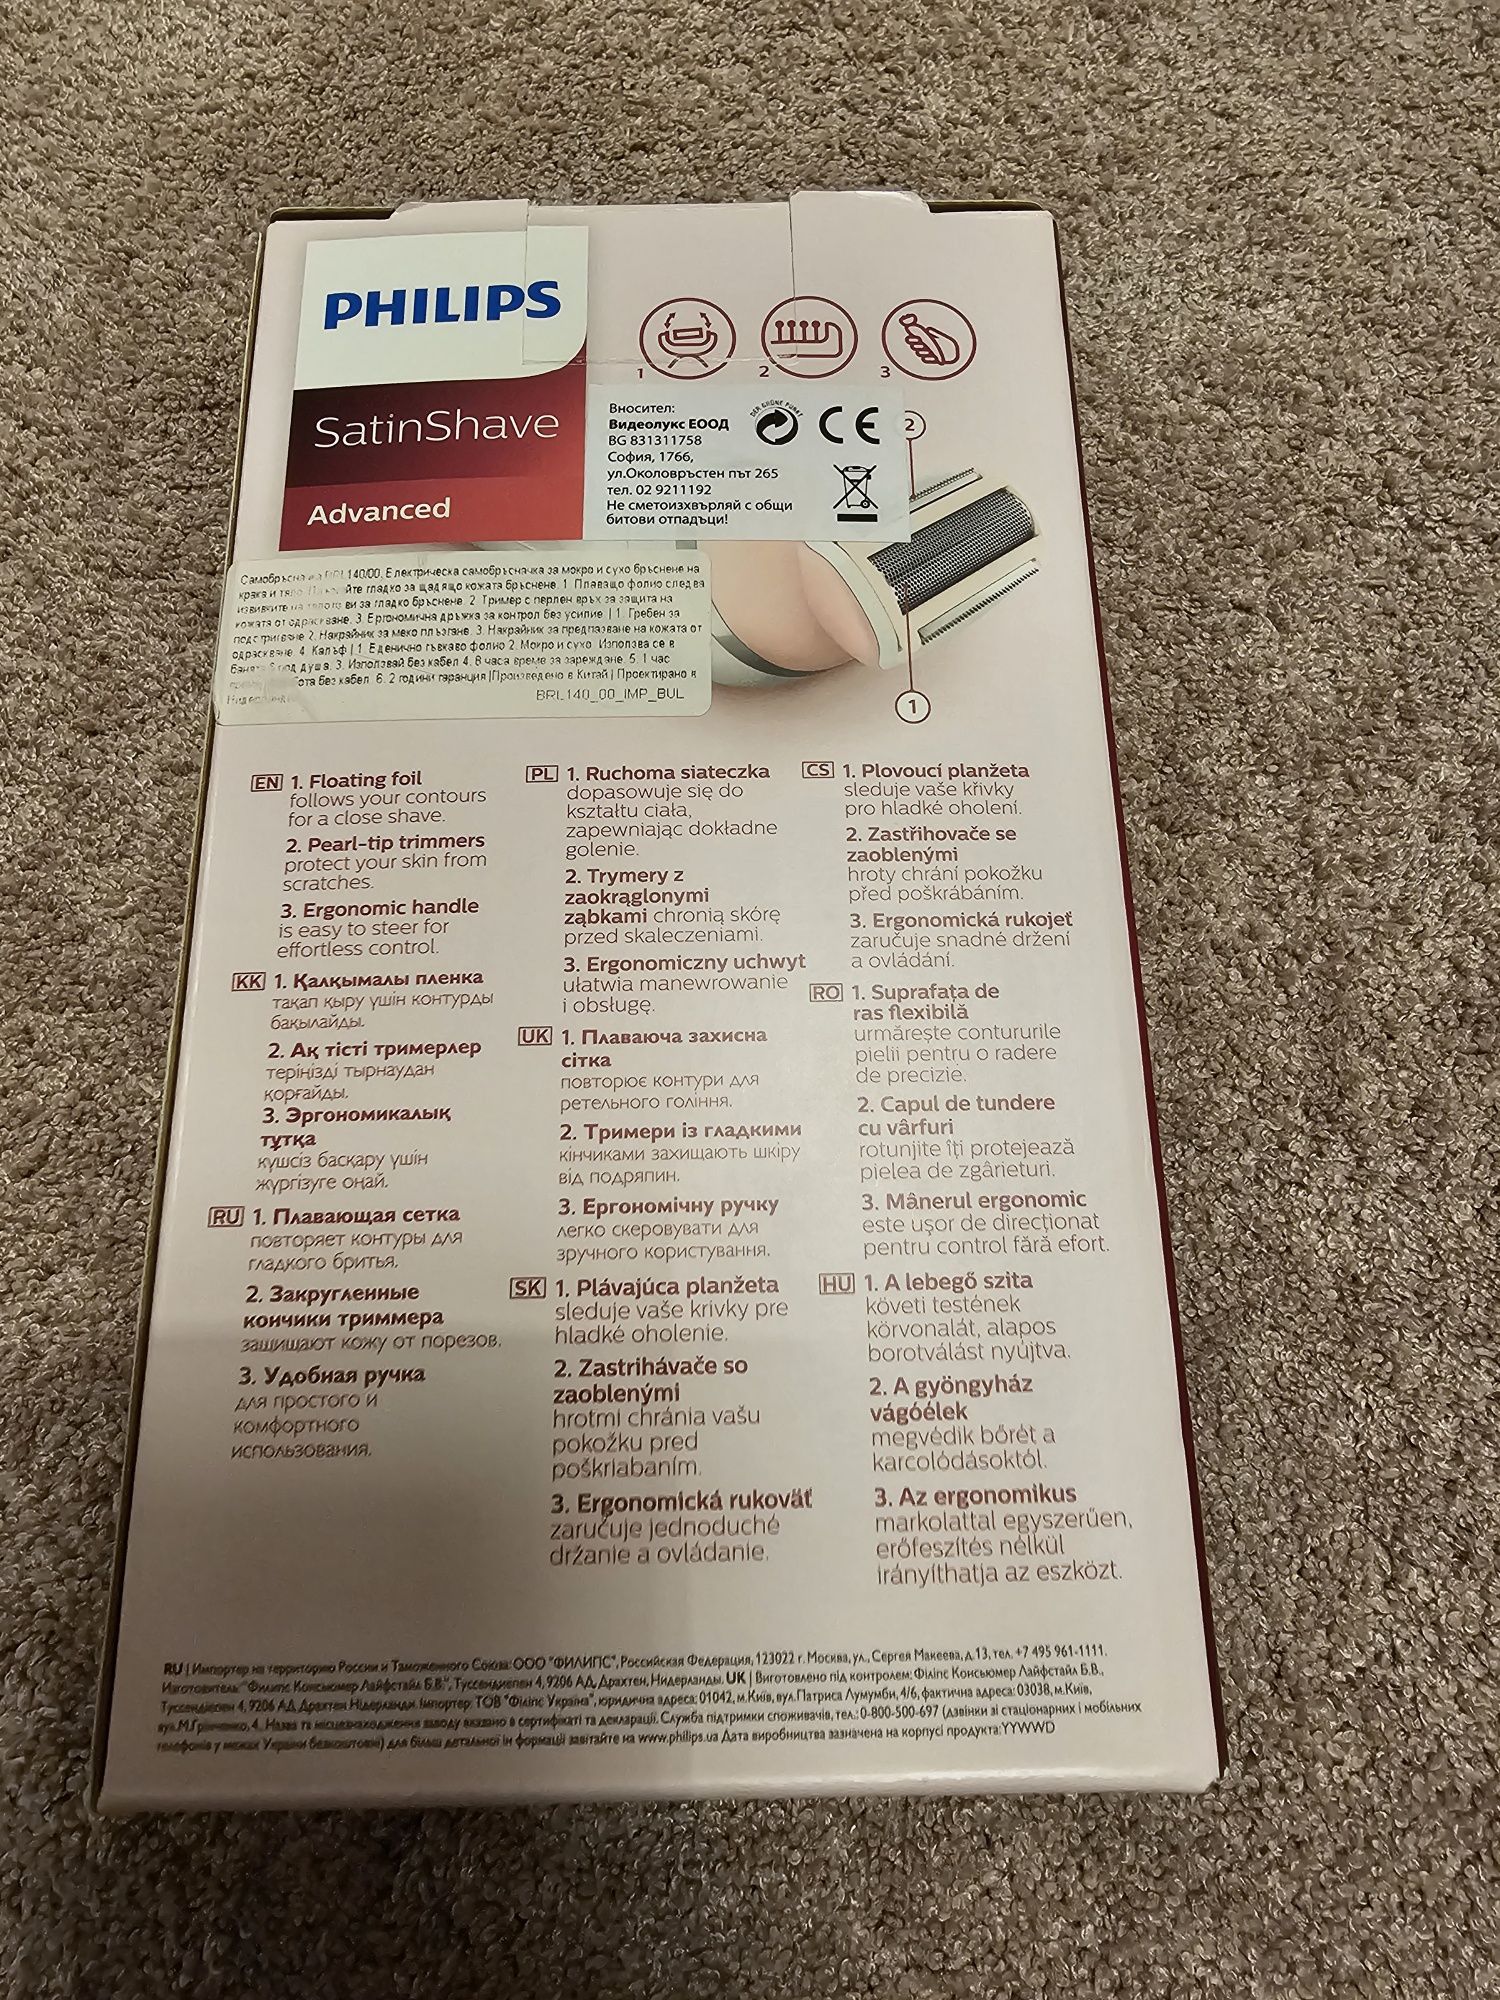 Дамска самобръсначка Philips - BRL140, 1 глава, бяла/розова